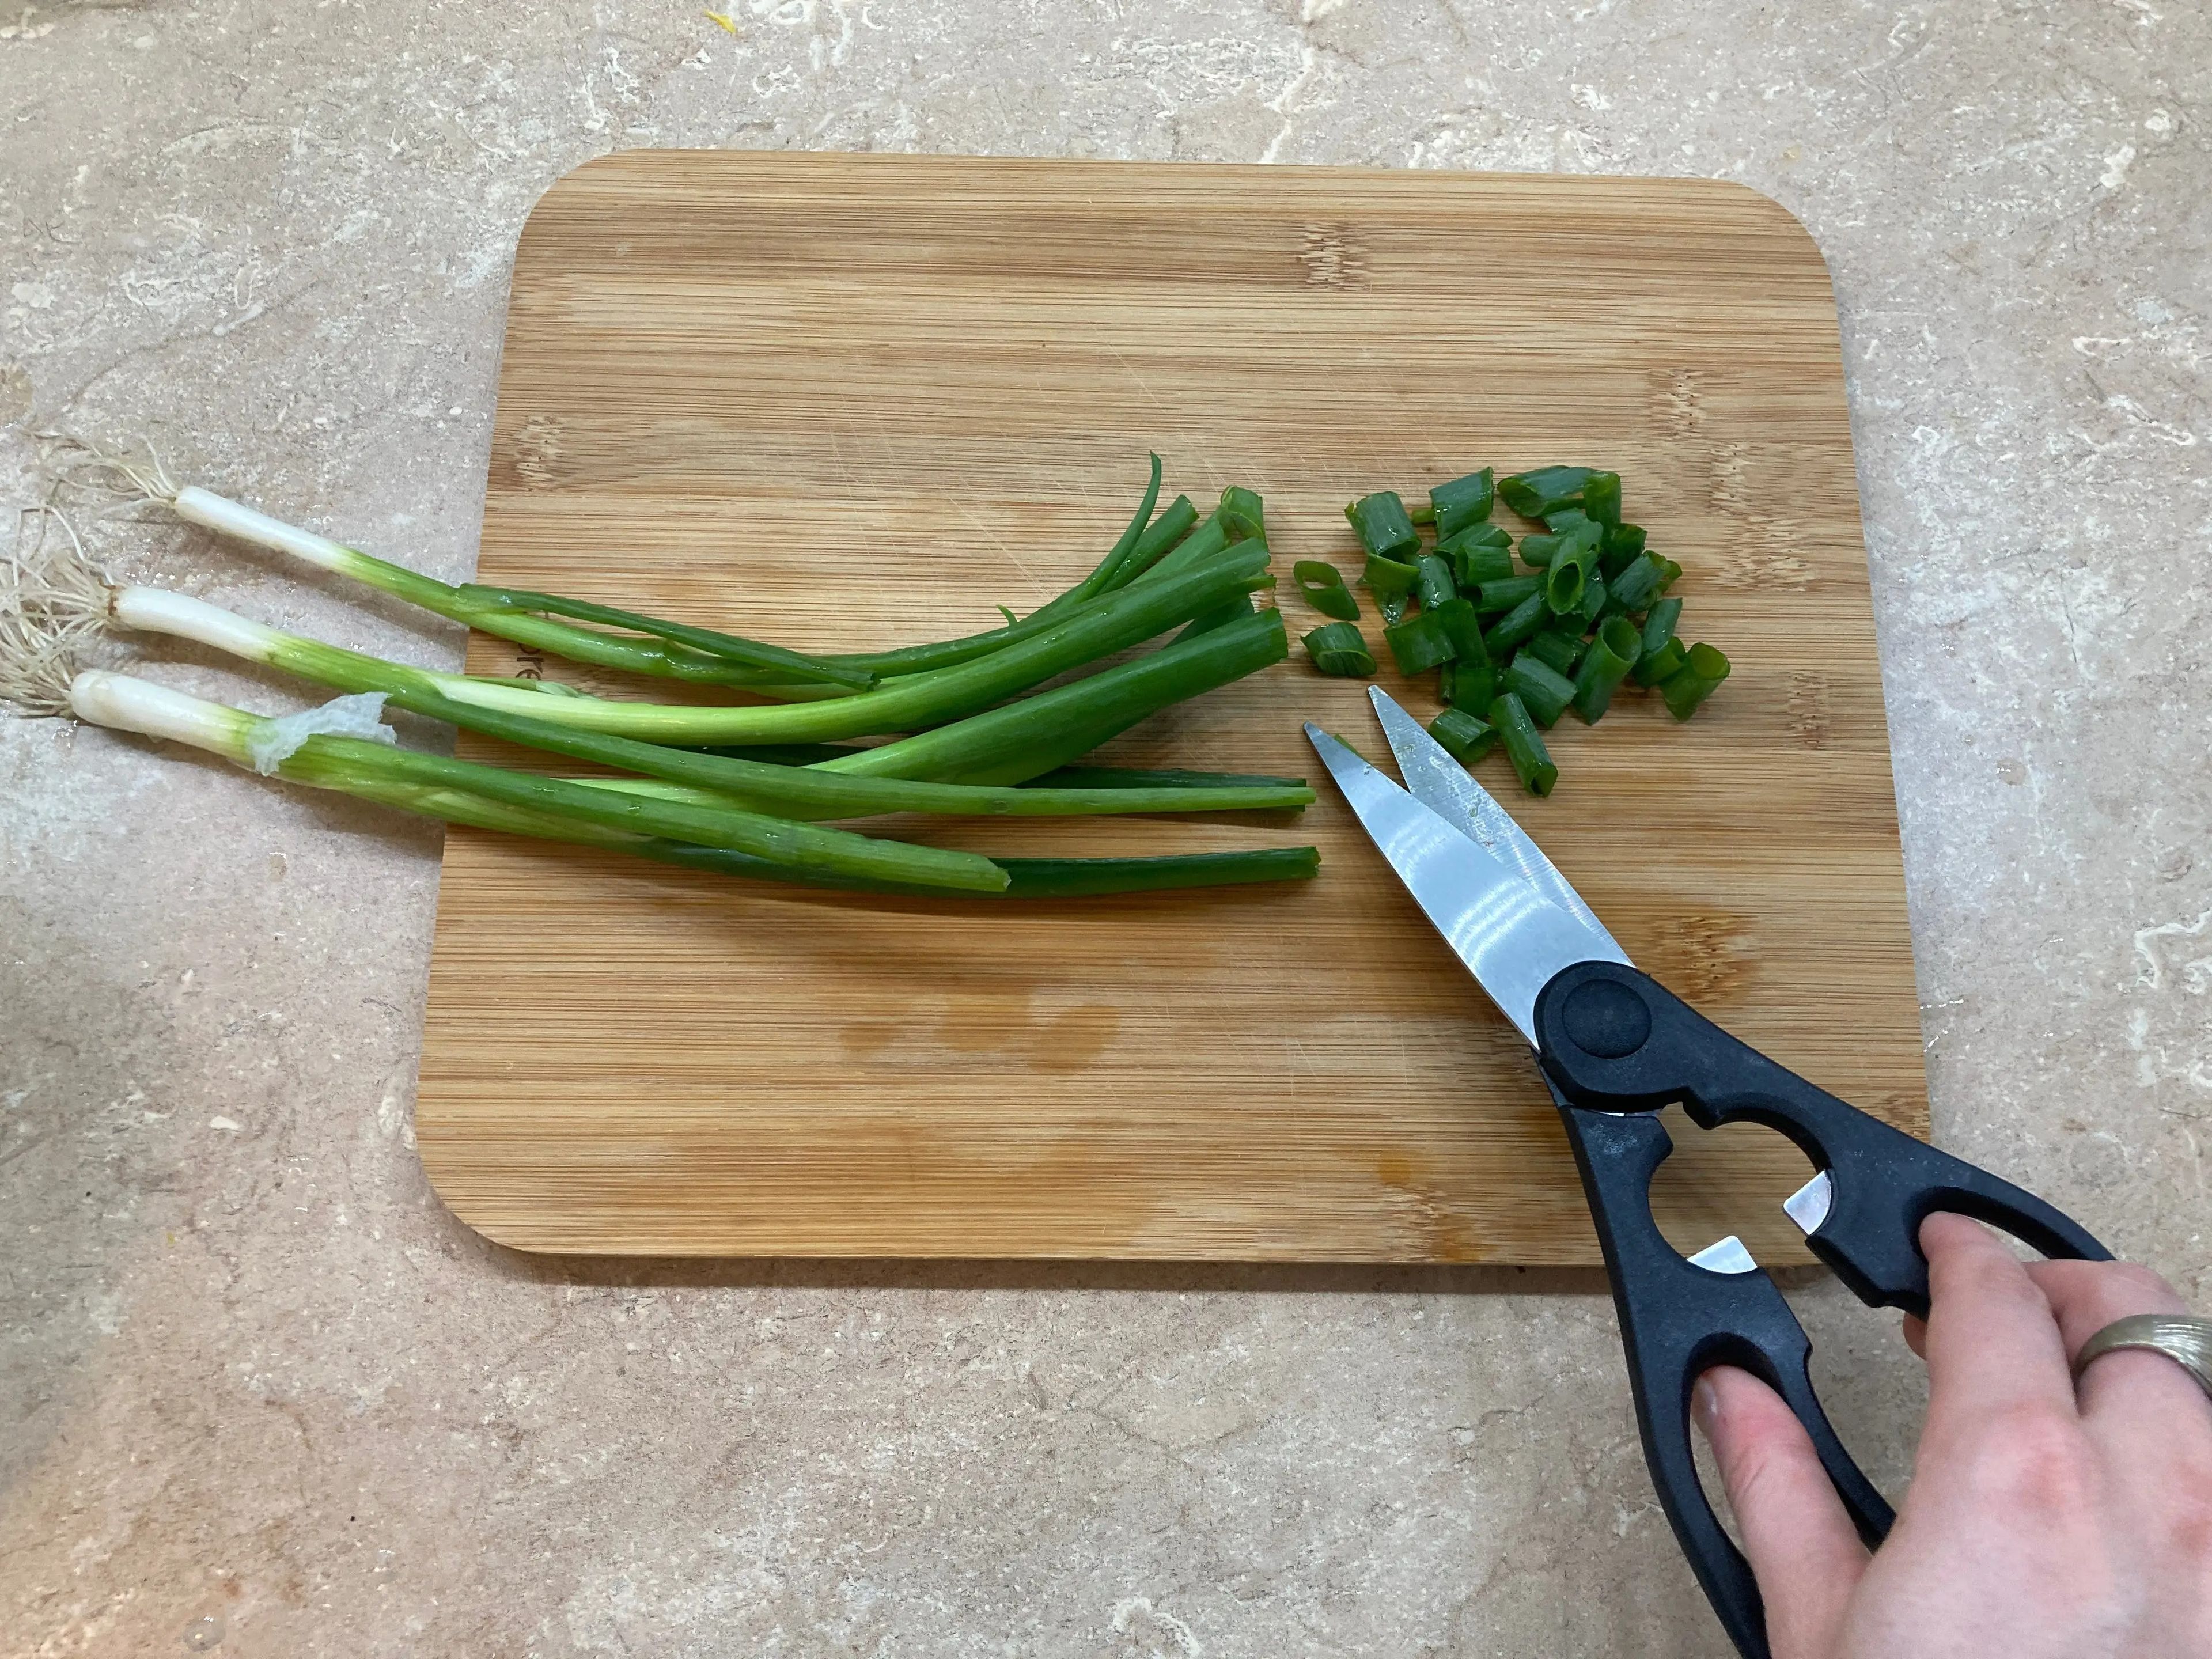 Cortar cebollas verdes con tijeras de cocina.